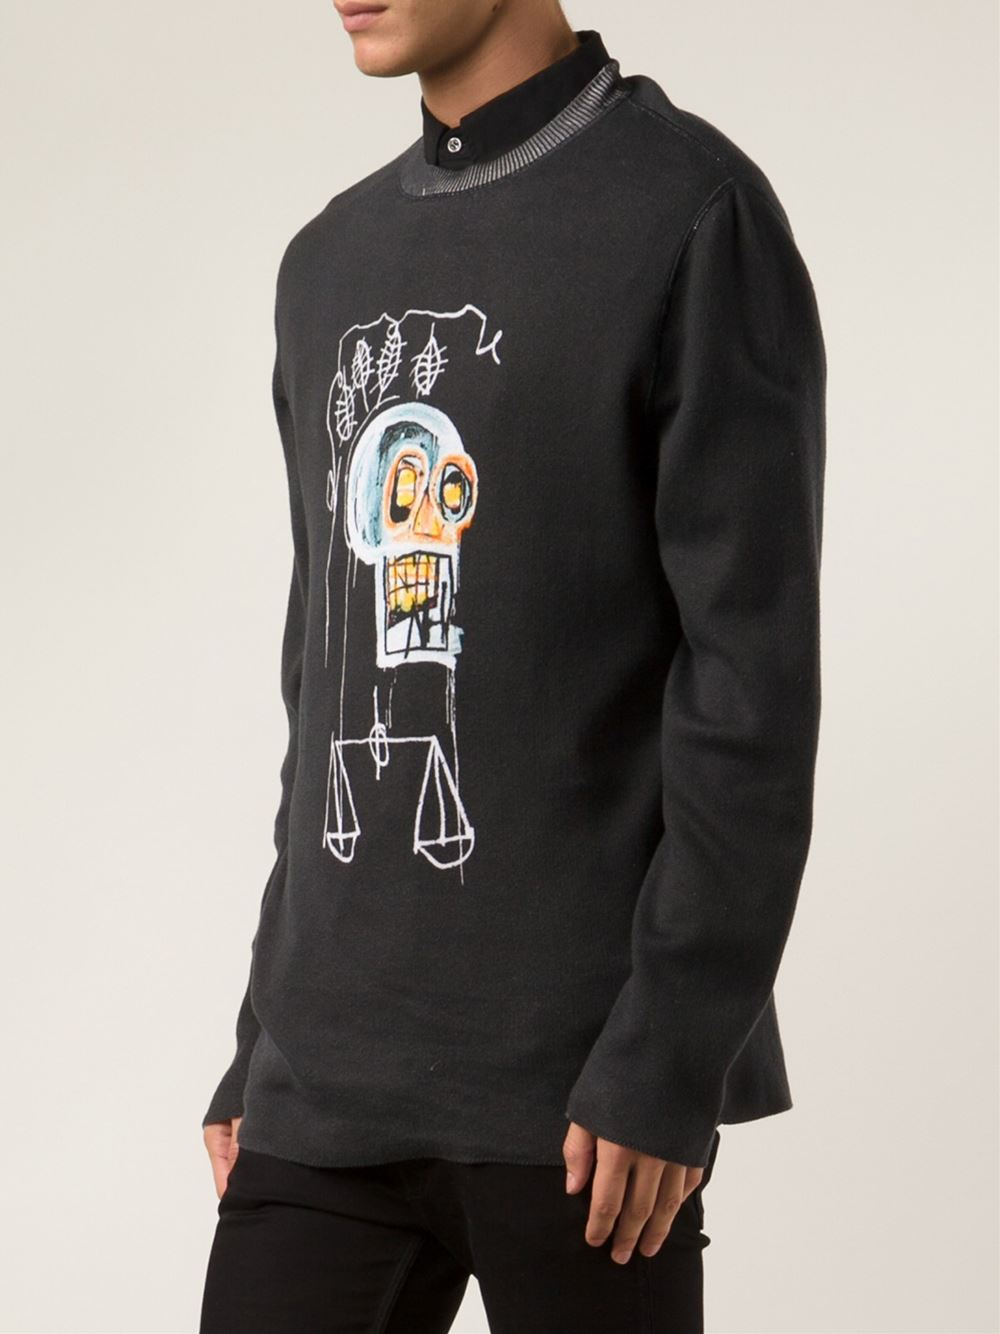 Lyst - Lucien Pellat Finet 'Jean Michael Basquiat' Sweater in Black for Men